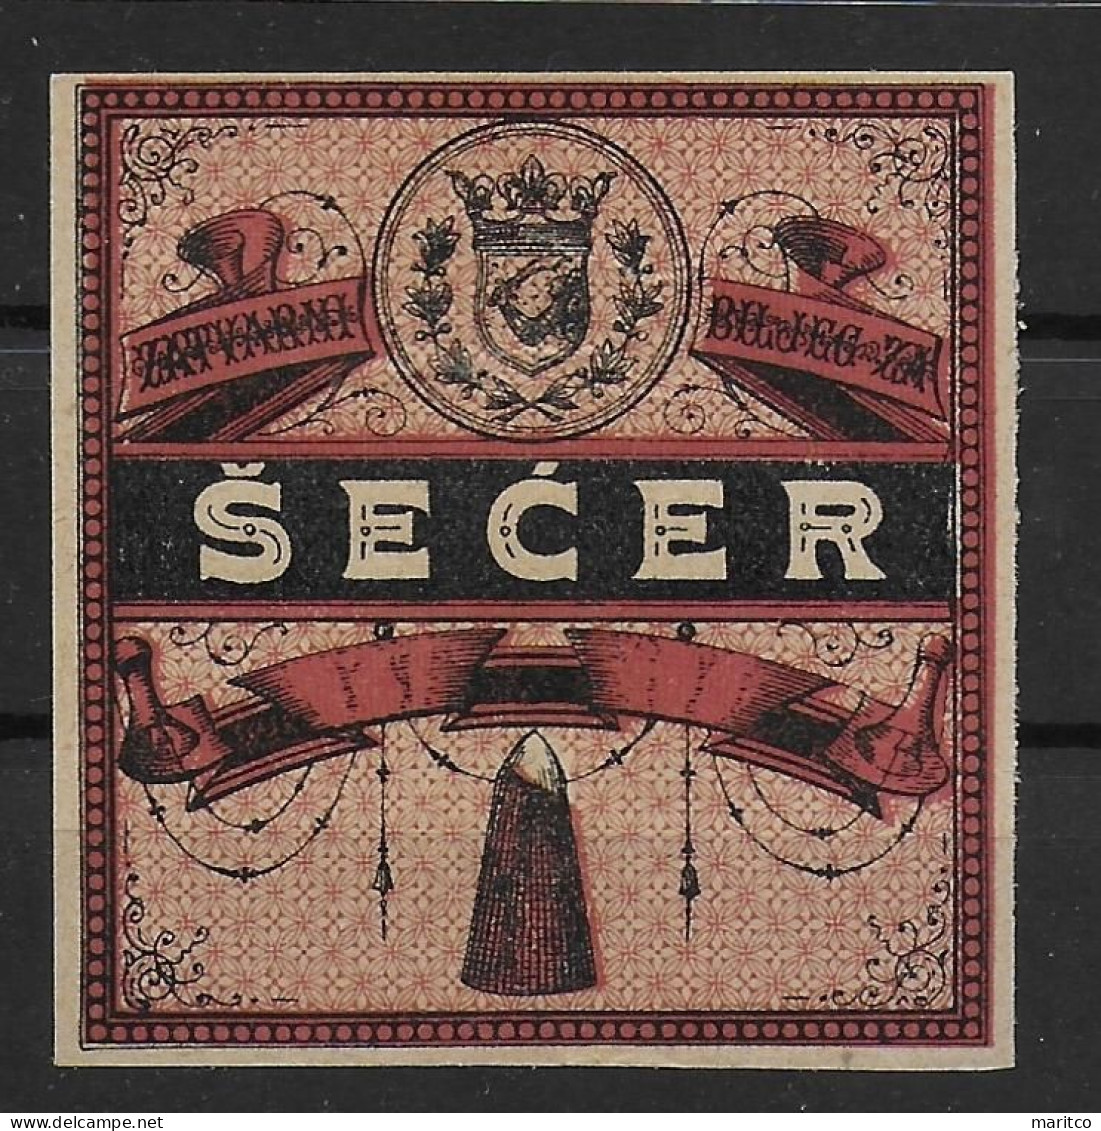 Österreich Bosnien-Herzegowina Zucker Verschlussmarke 1890 Stempelmarken Fiscal Revenue Stamps - Fiscale Zegels